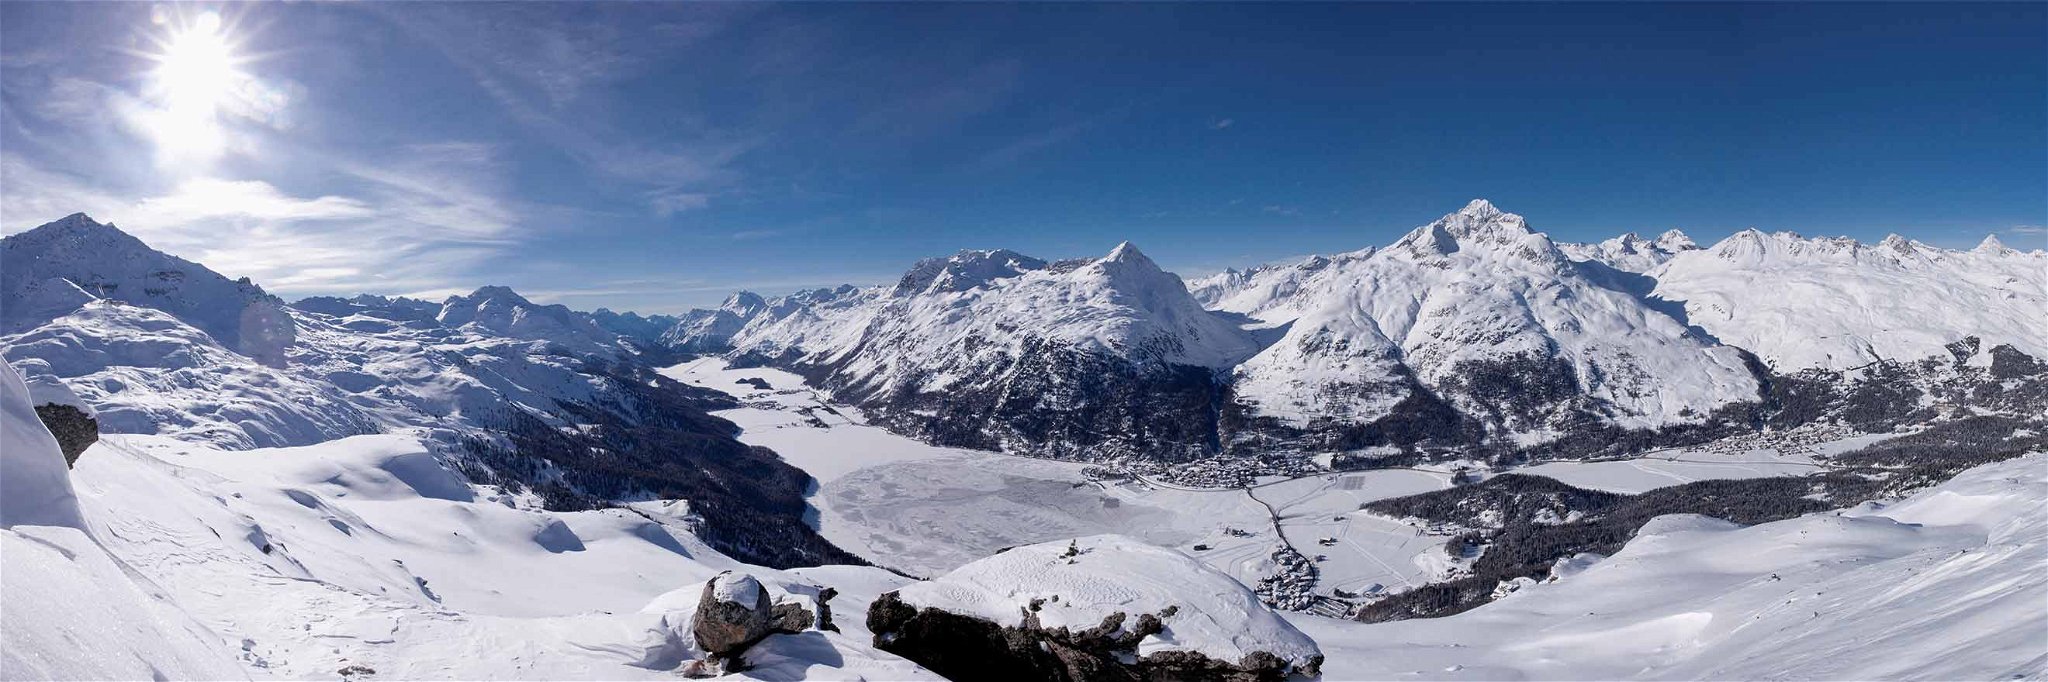 St. Moritz ist nicht nur eine wunderschöne Location für die Ski-WM, sondern auch ein wahres Pistenparadies.&nbsp;